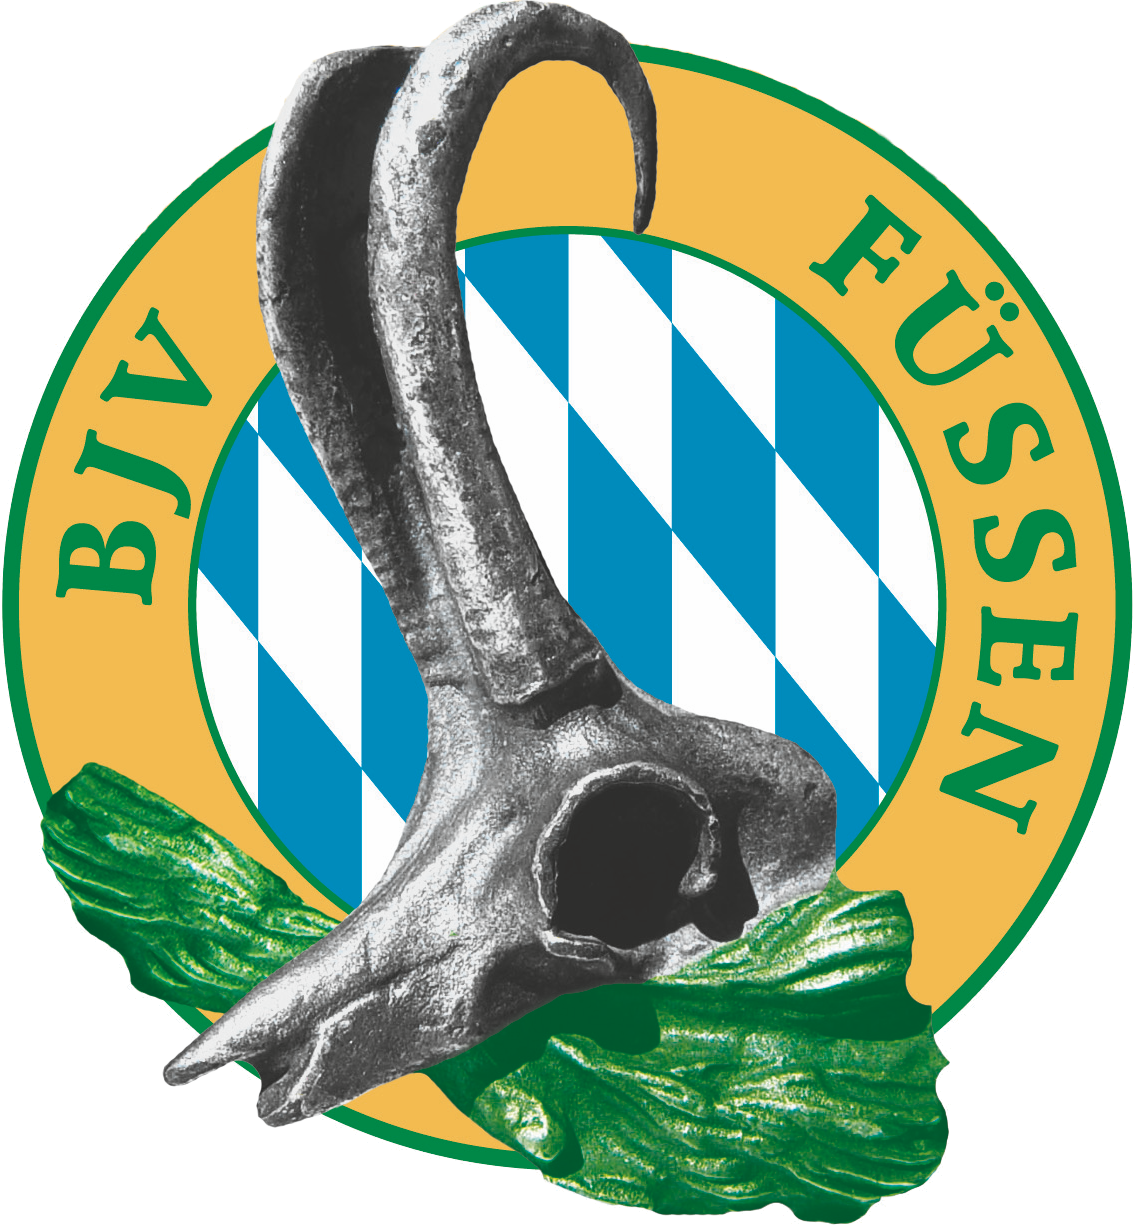 BJV Kreisverein Füssen e.V.